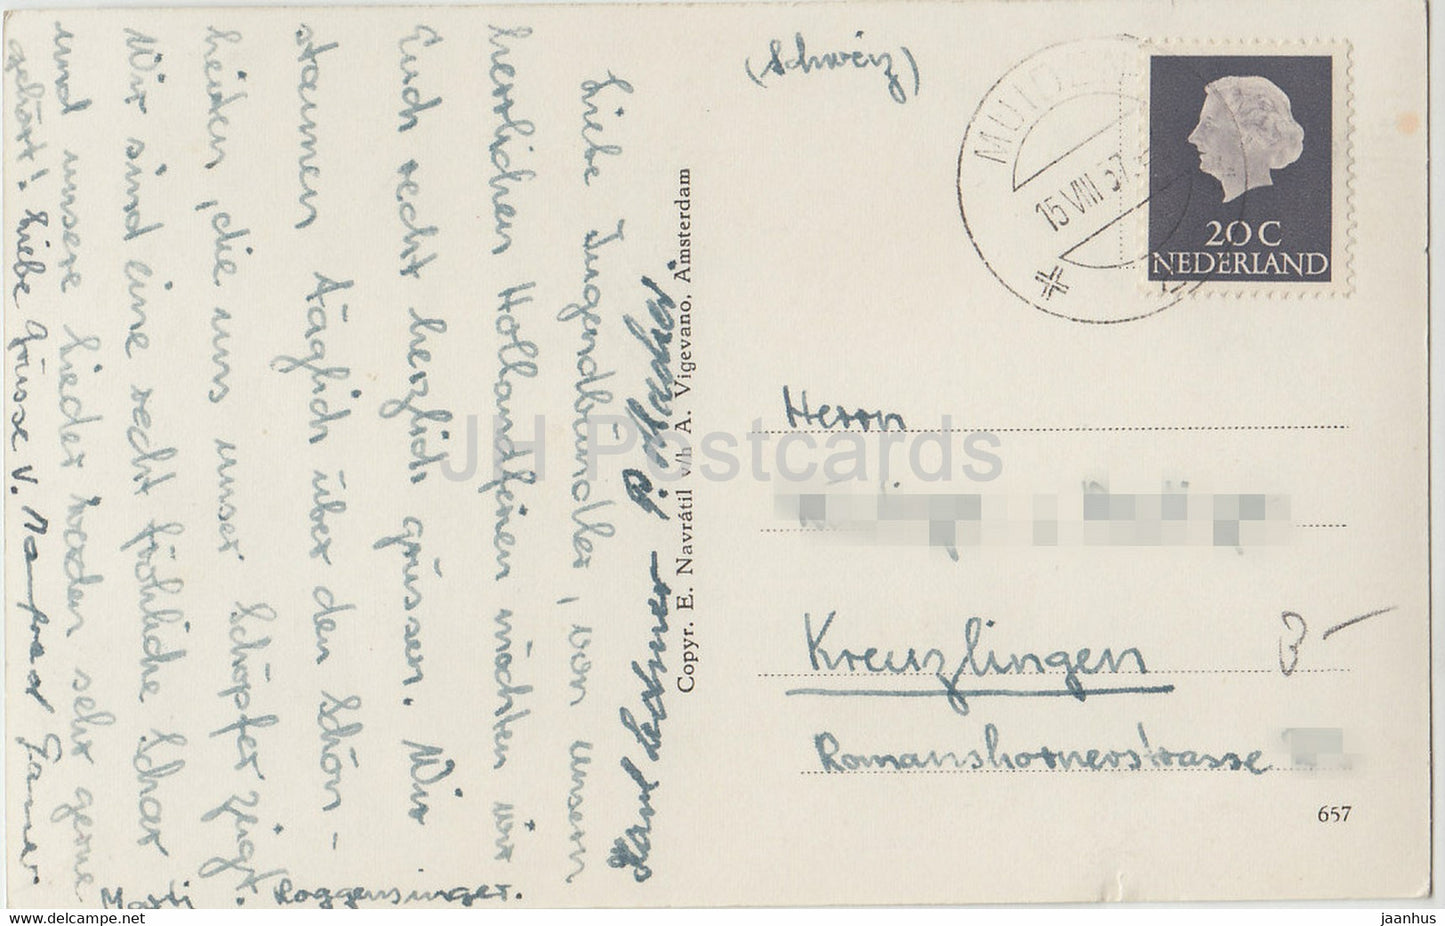 Amsterdam - Herengracht - alte Postkarte - 1957 - Niederlande - gebraucht